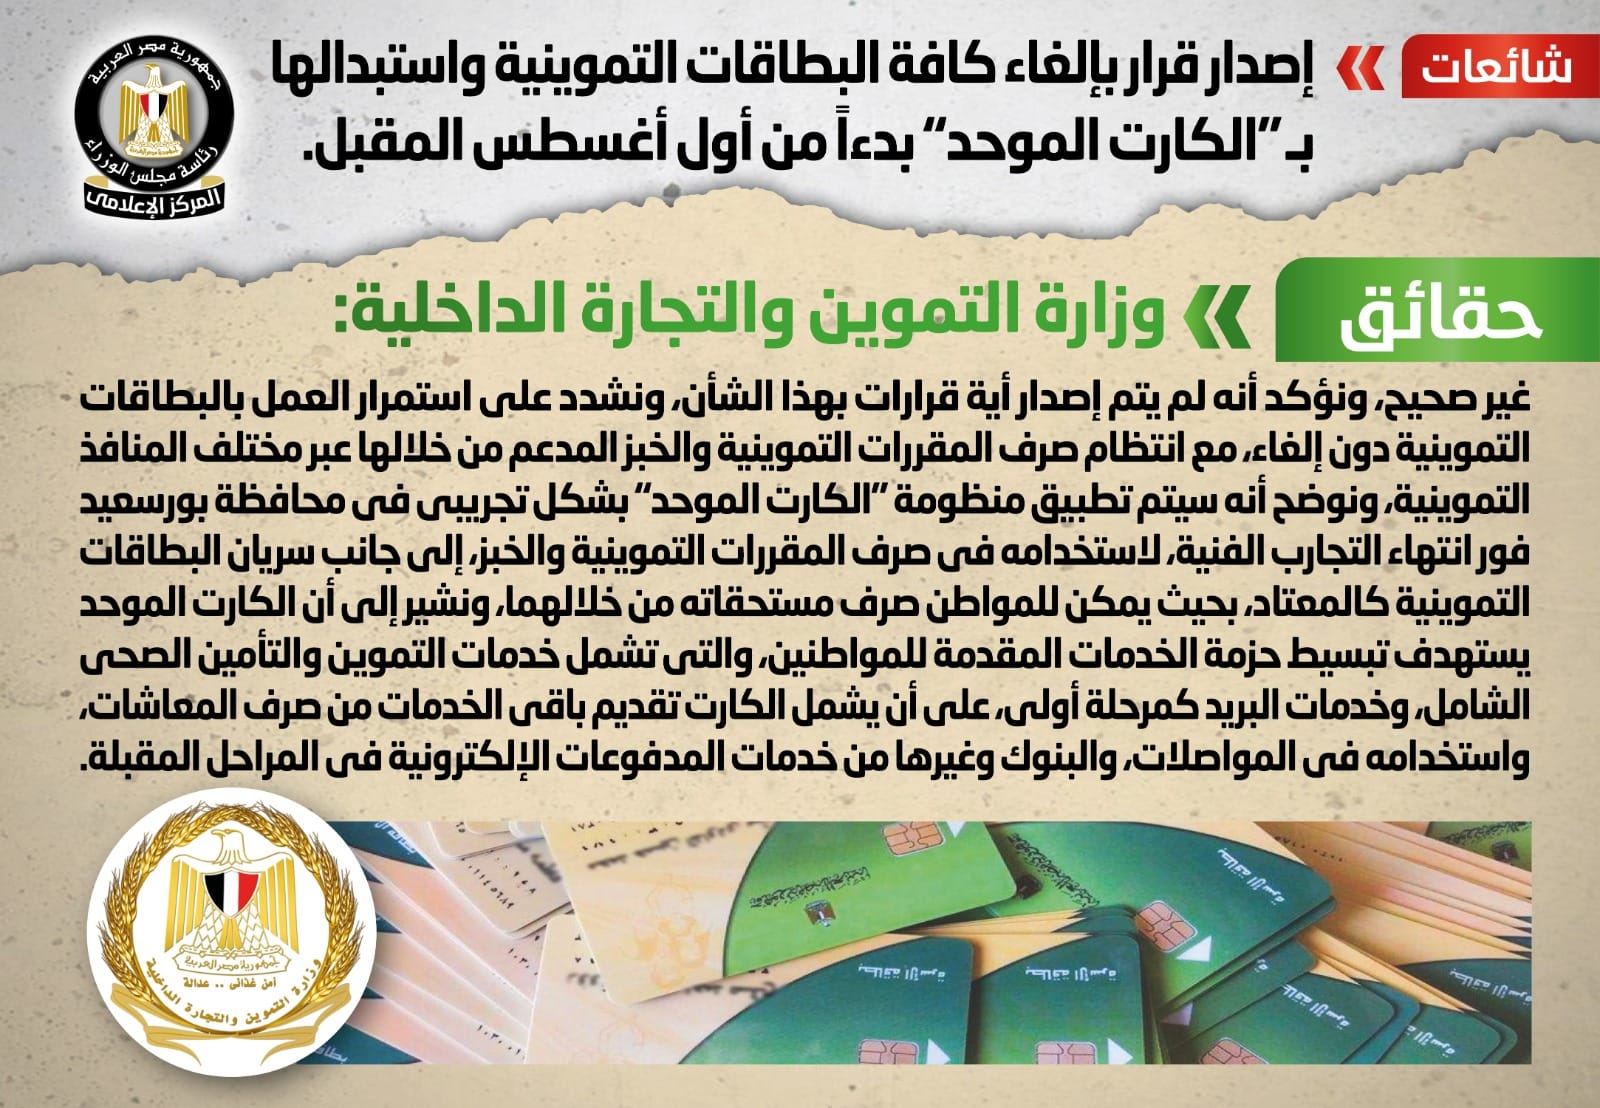 الحكومة تكشف حقيقة إلغاء البطاقات التموينية واستبدالها بـ الكارت الموحد بدءا من أول أغسطس 1